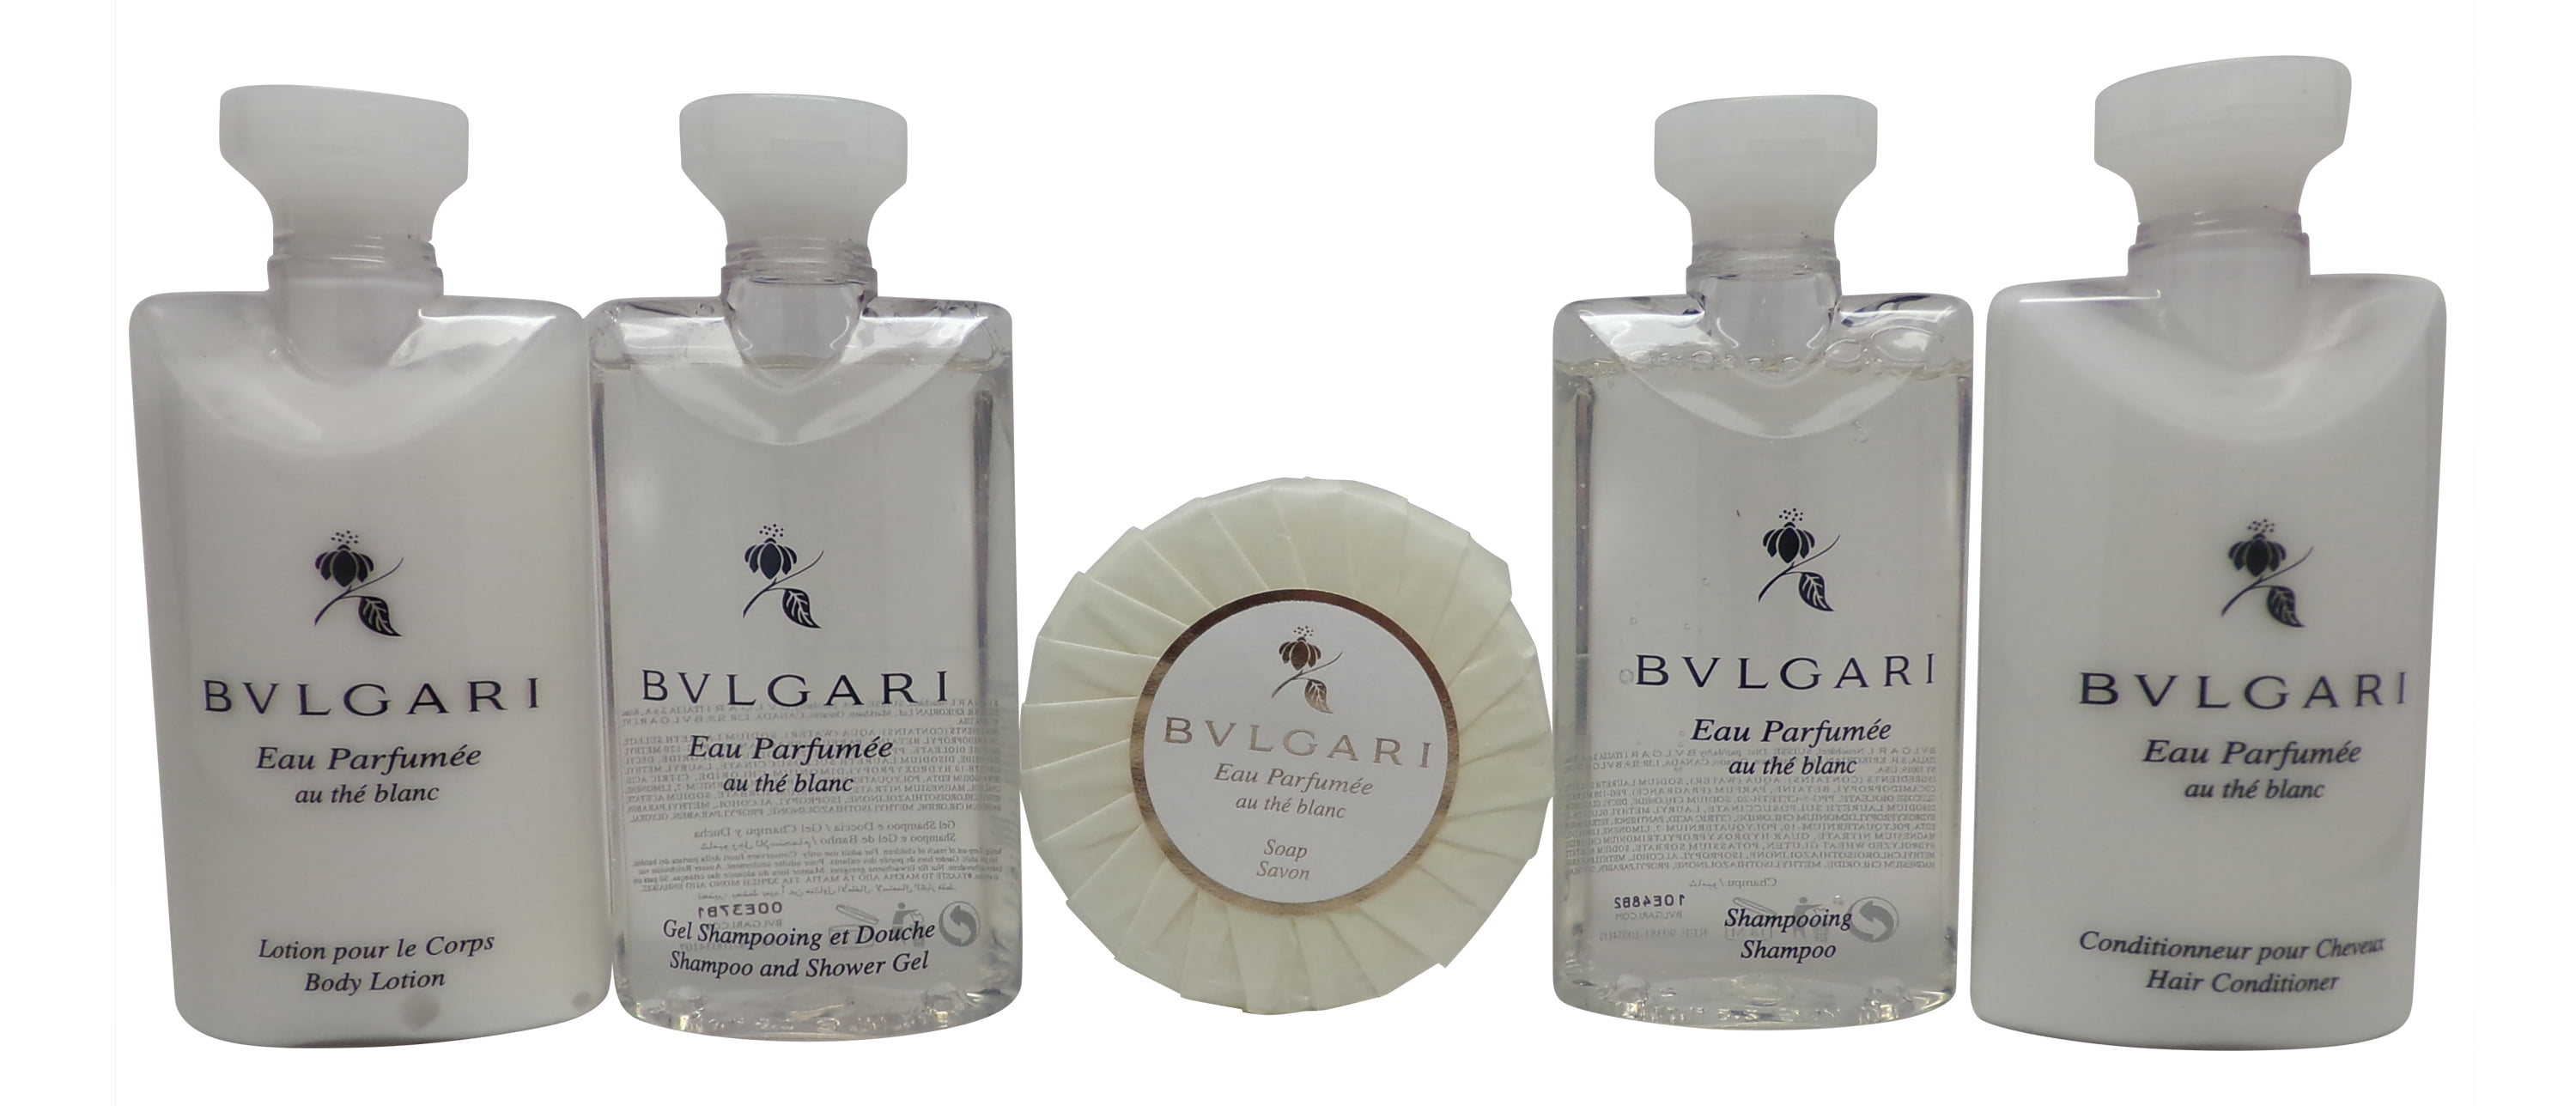 bvlgari white tea lotion